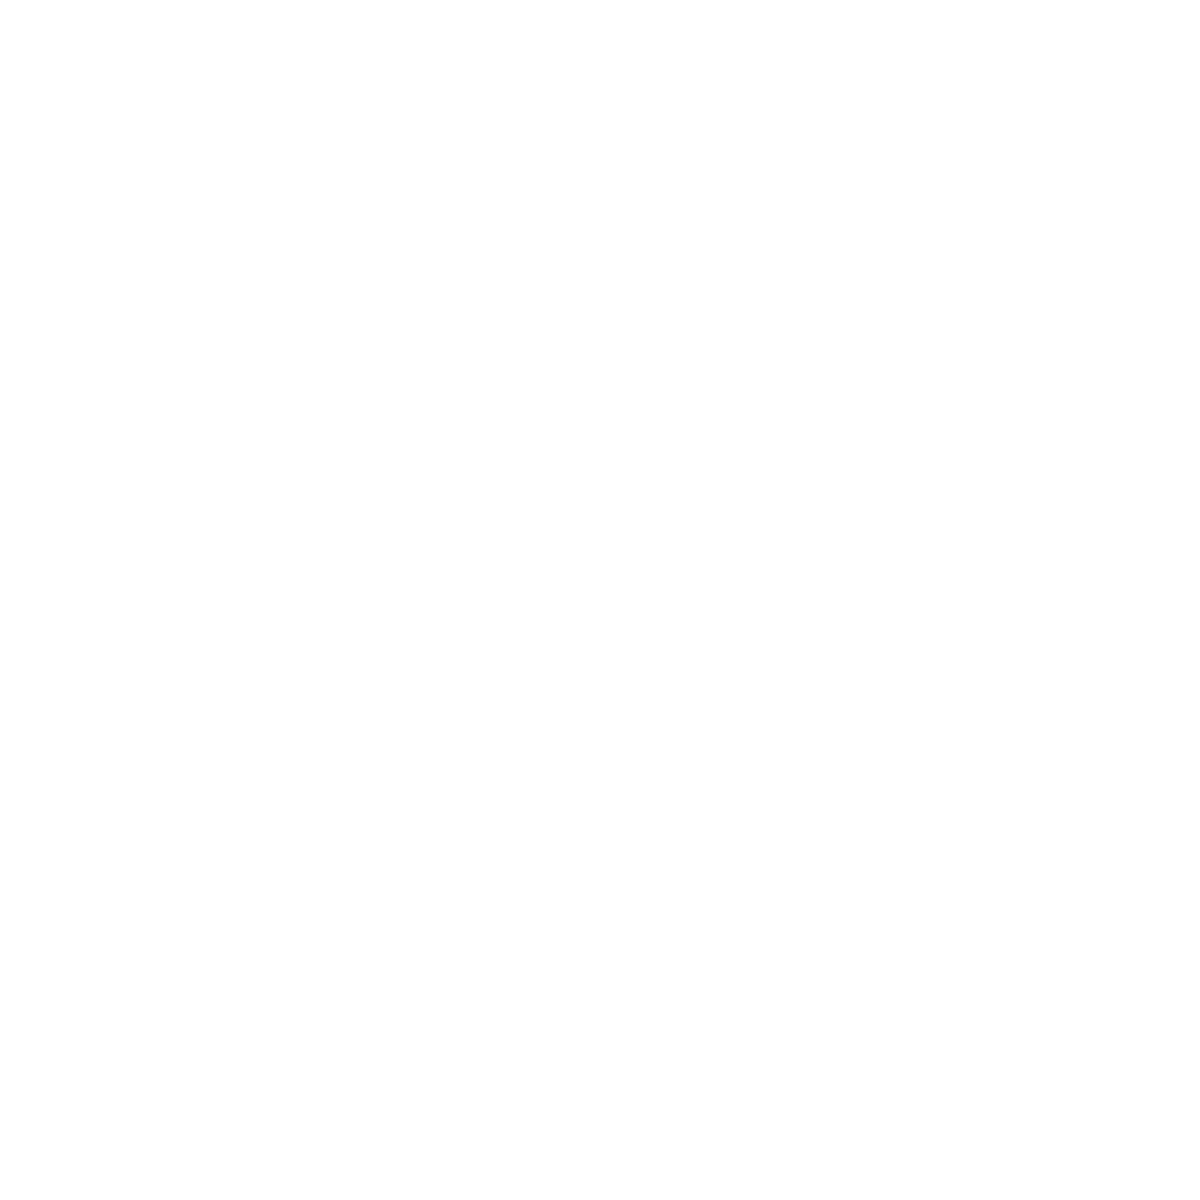 Logo du recyclage